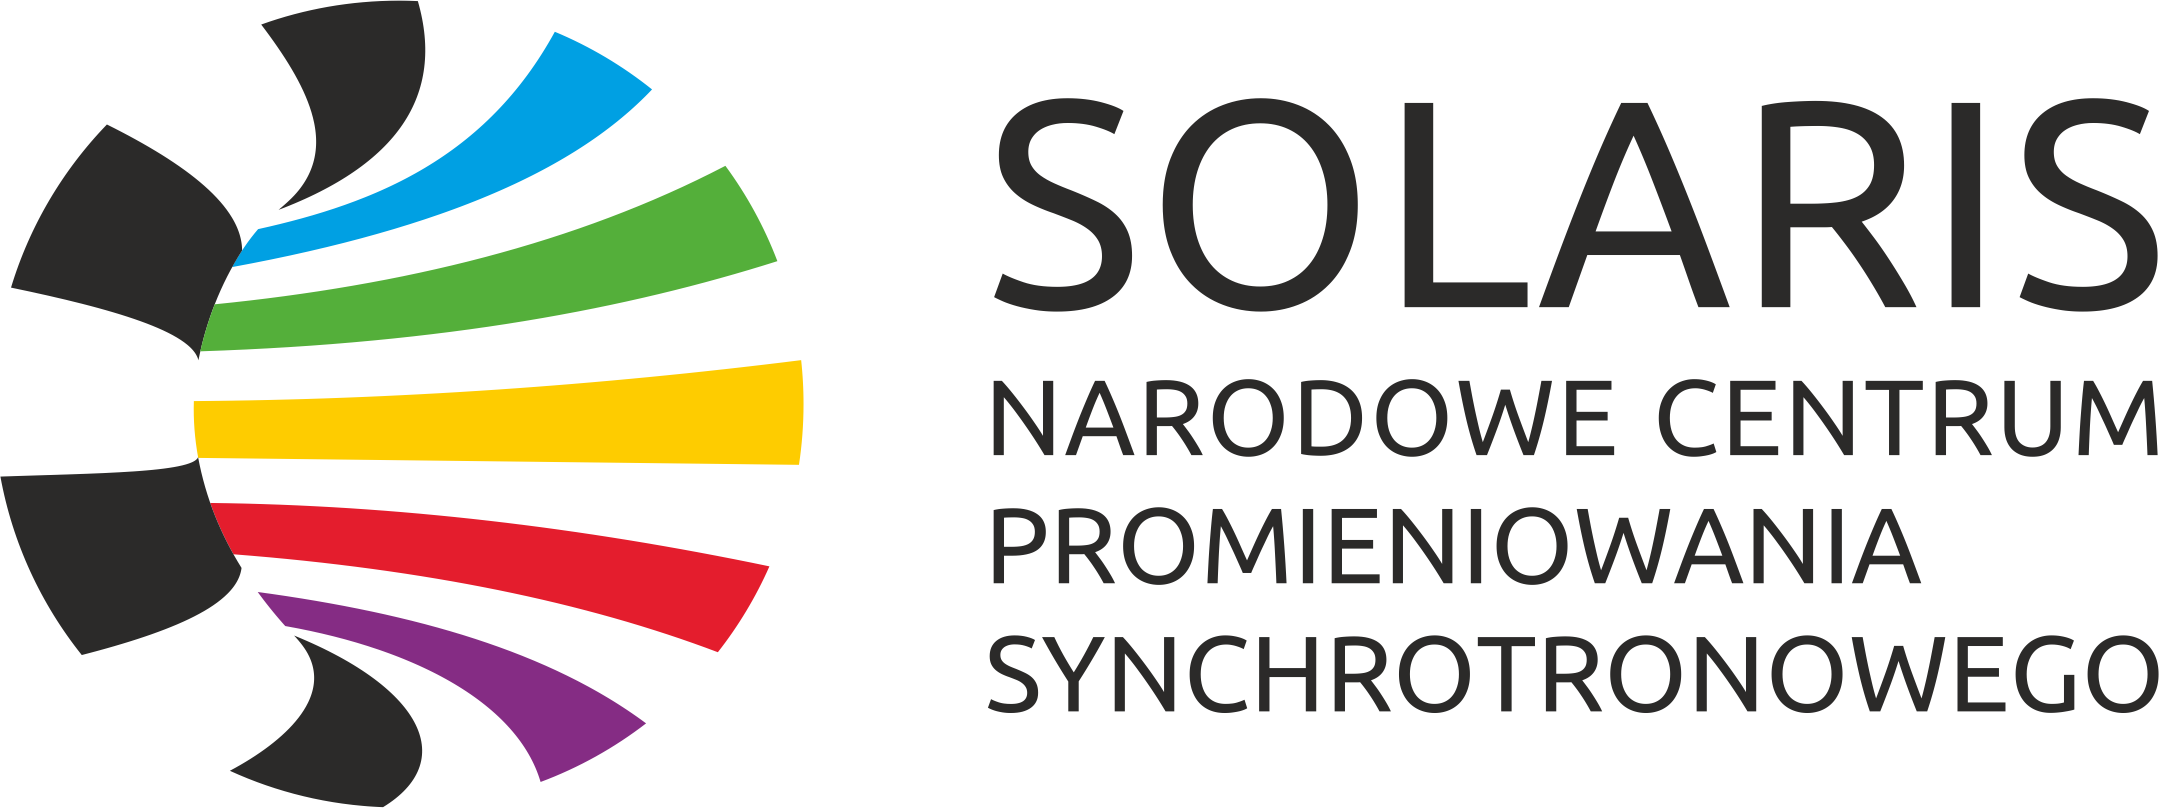 Przykład logotypu SOLARIS w ułożeniu poziomym